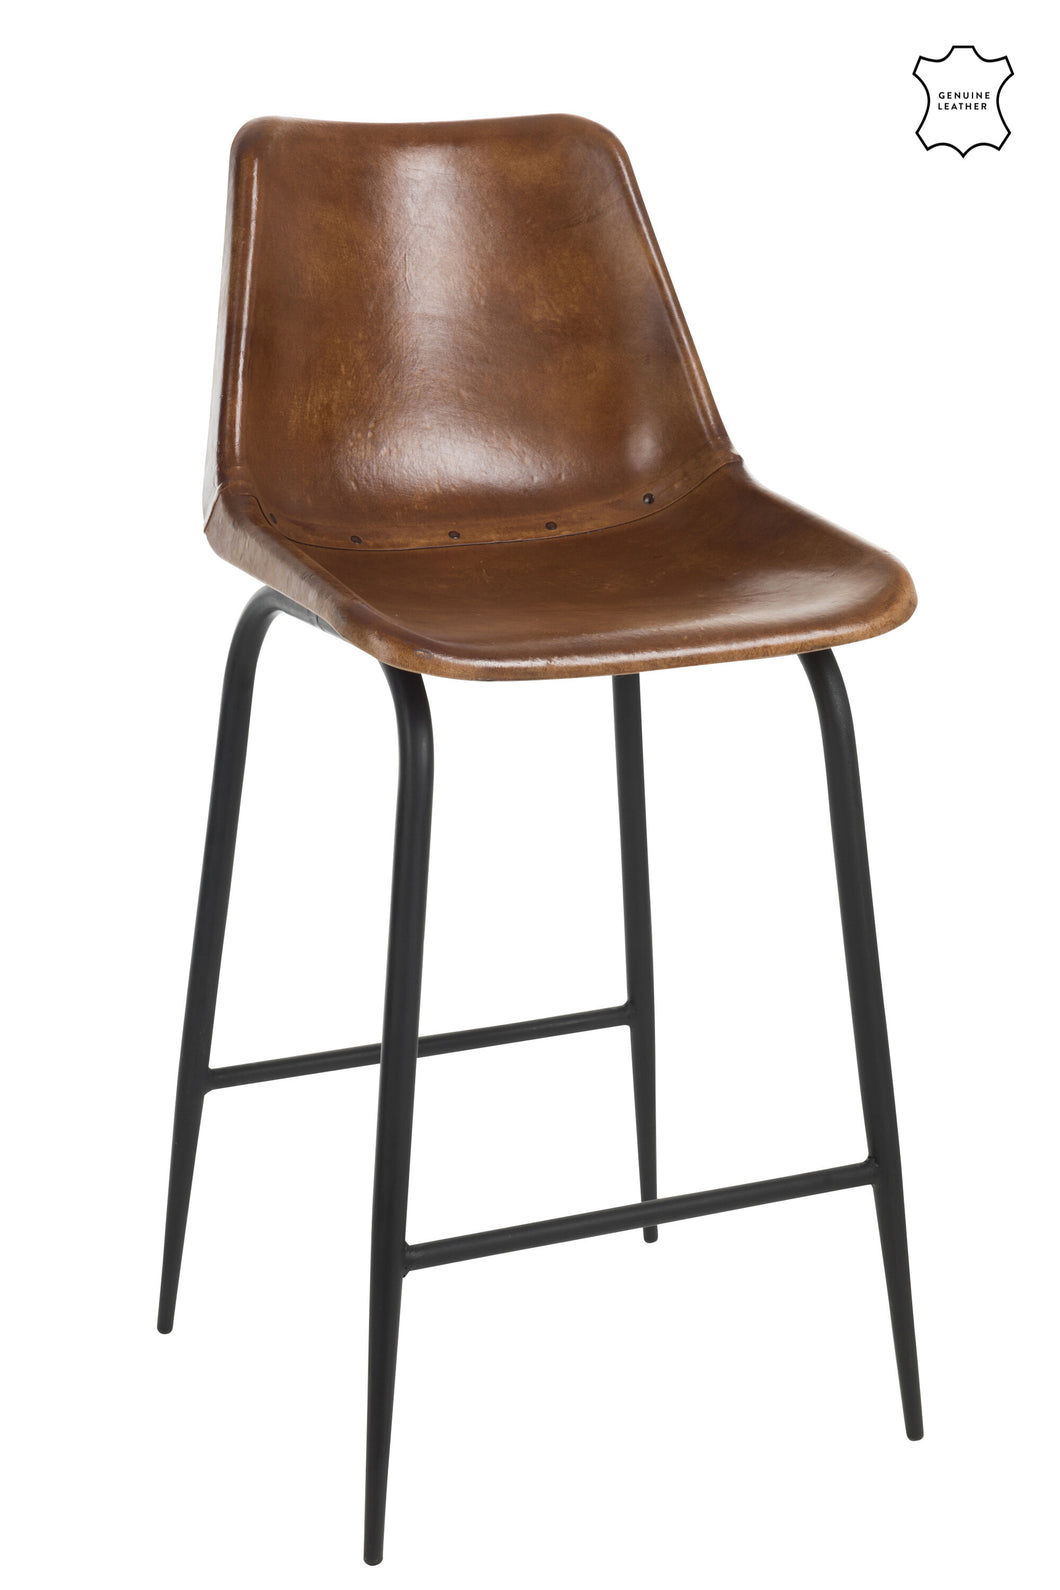 Chaise Bar cuir & métal (2 Coloris)